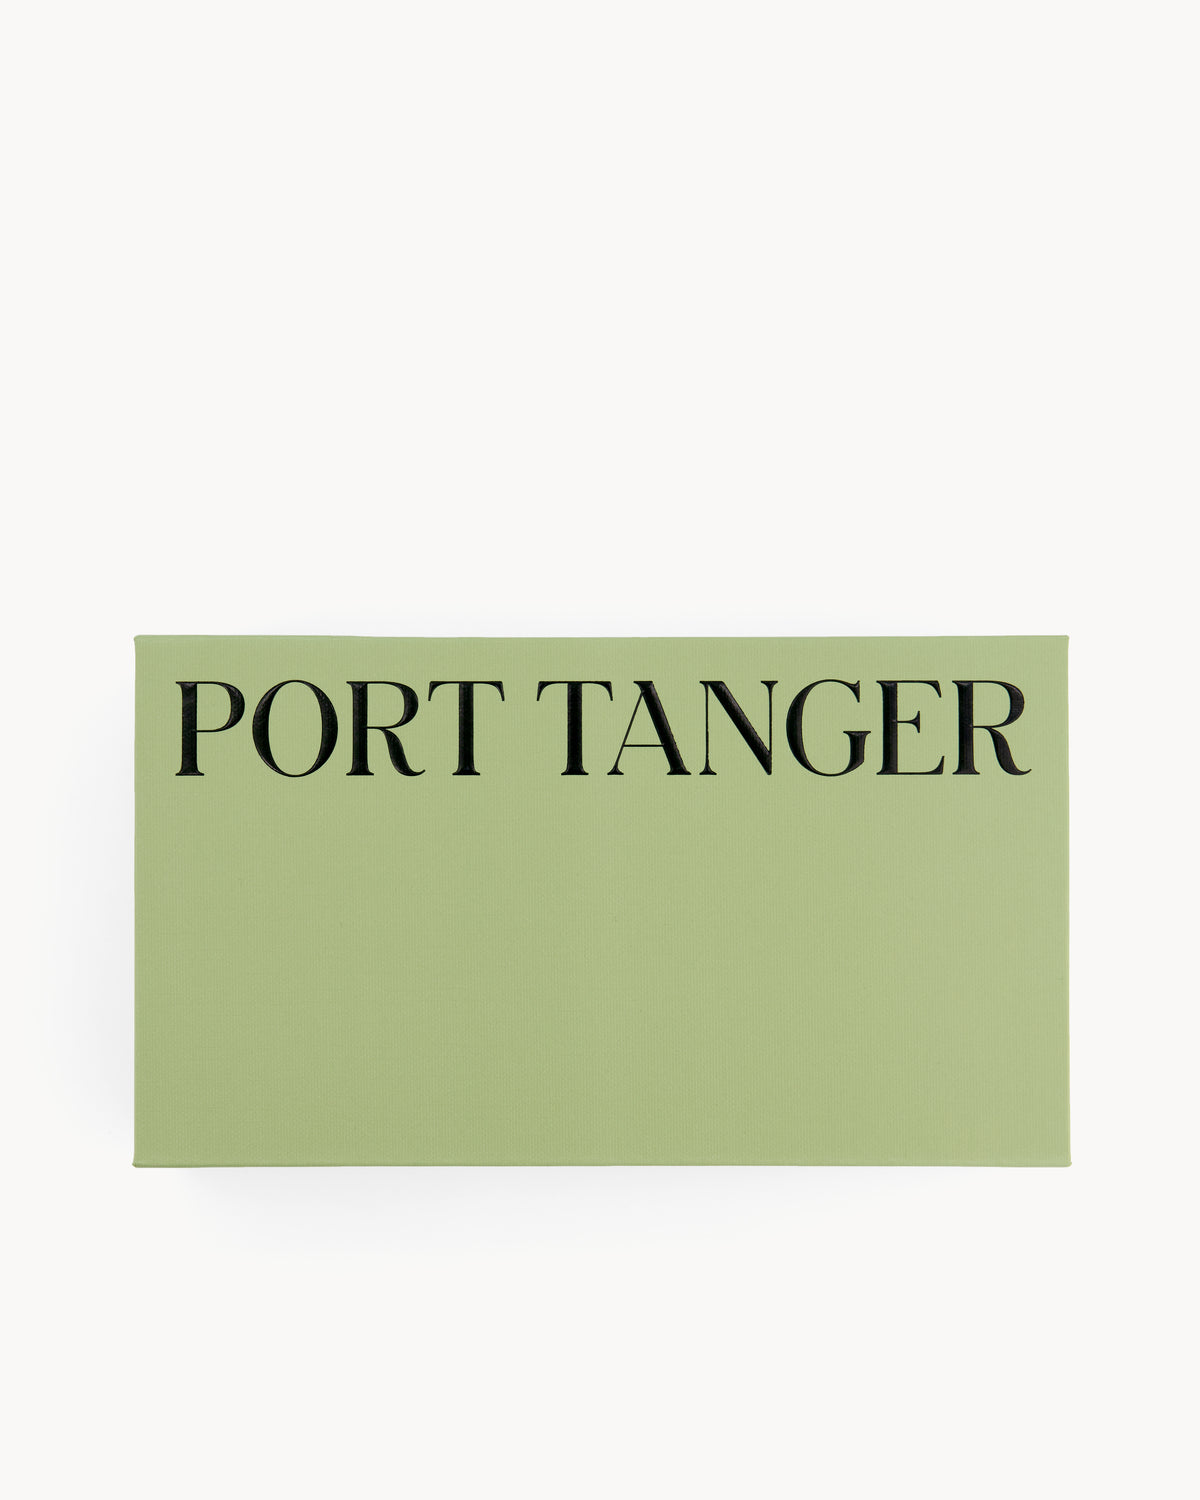 Port Tanger Zarin Sunglasses in Black Acetate and Rif Blue Lenses 5